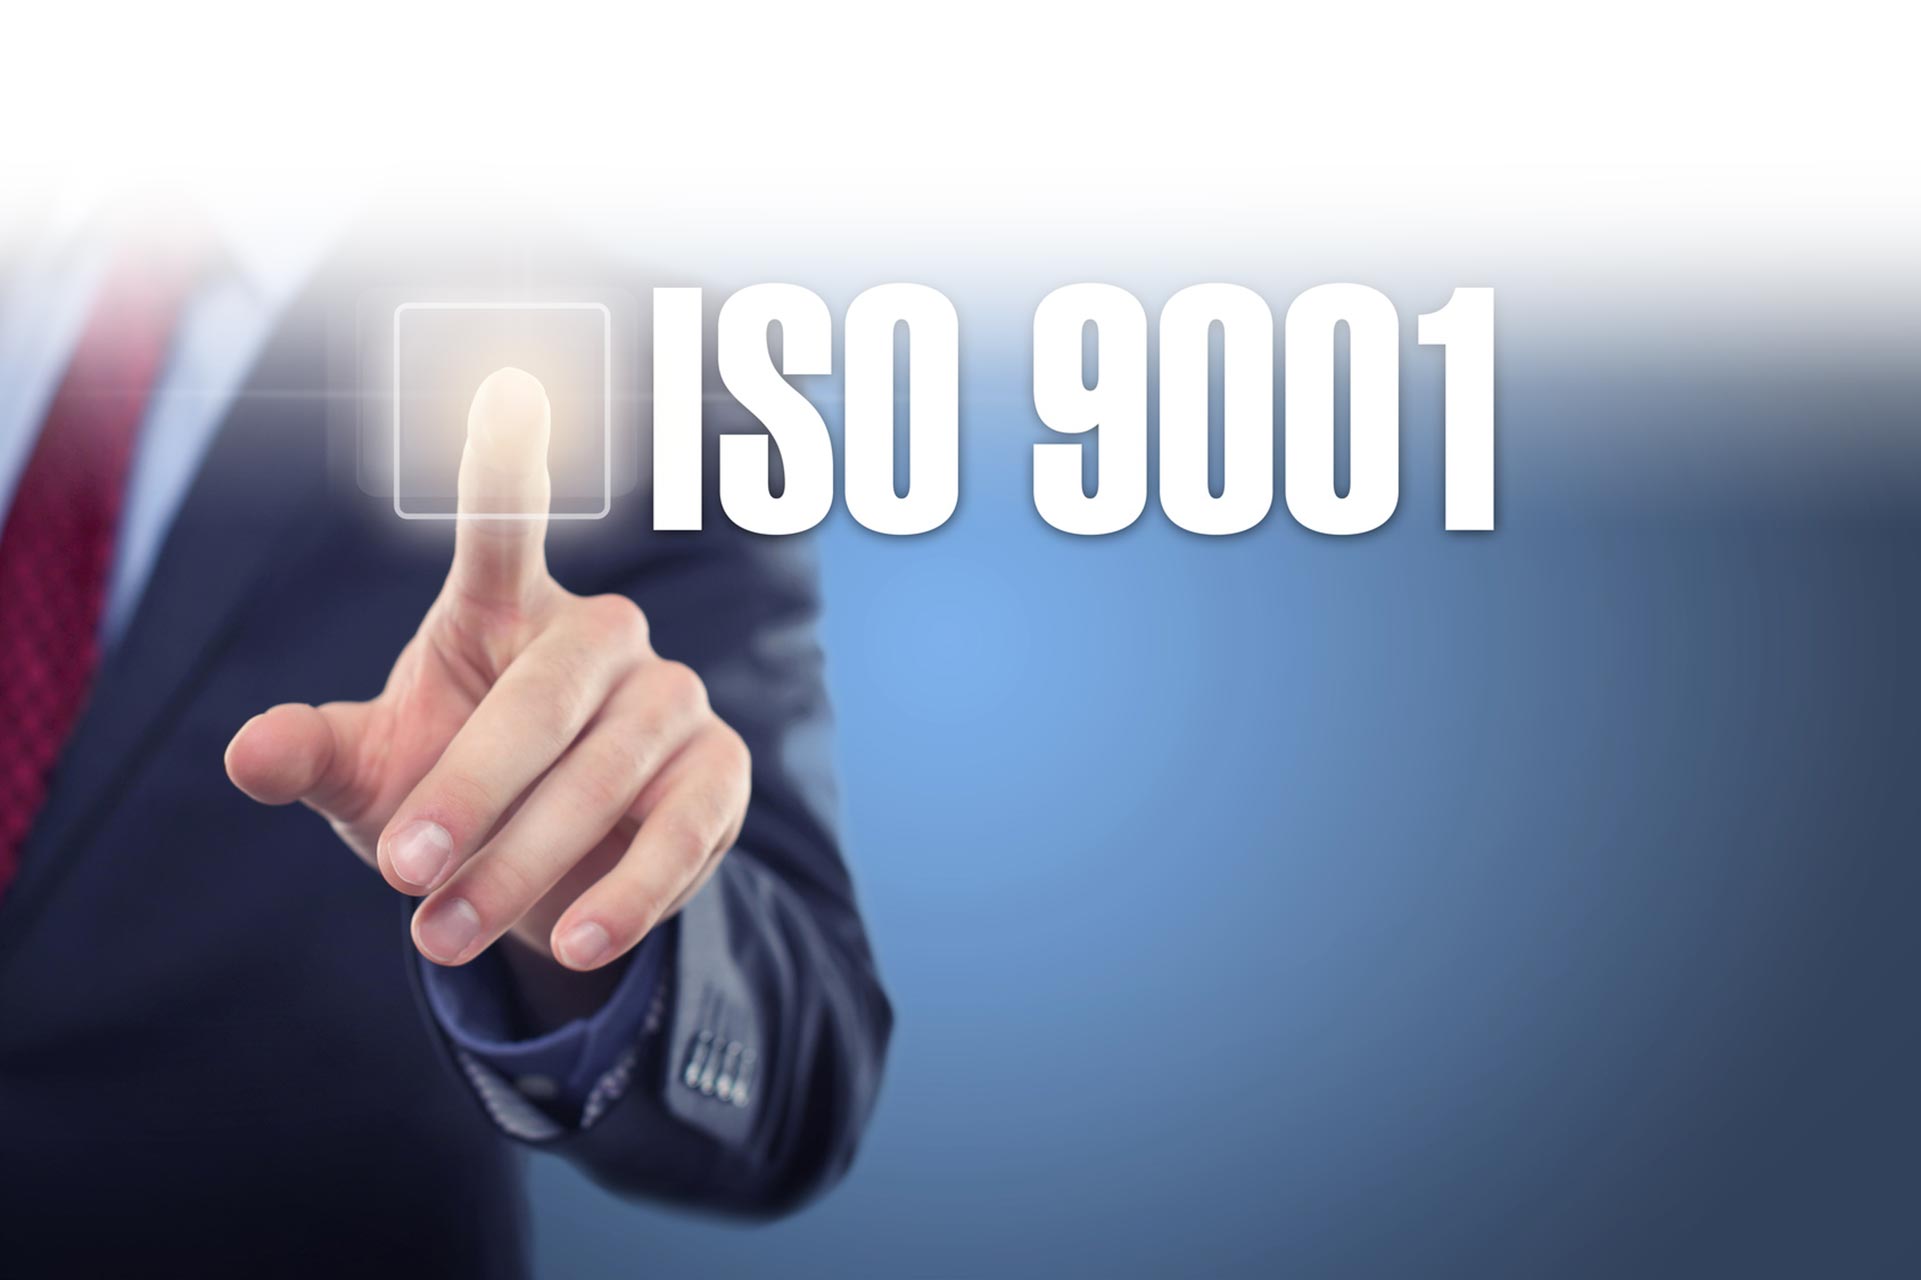 30 марта 2018 г. Фонд поддержки предпринимательства Республики Северная Осетия-Алания успешно прошел сертификационный аудит на соответствие требованиям международного стандарта качества ISO 9001:2015.